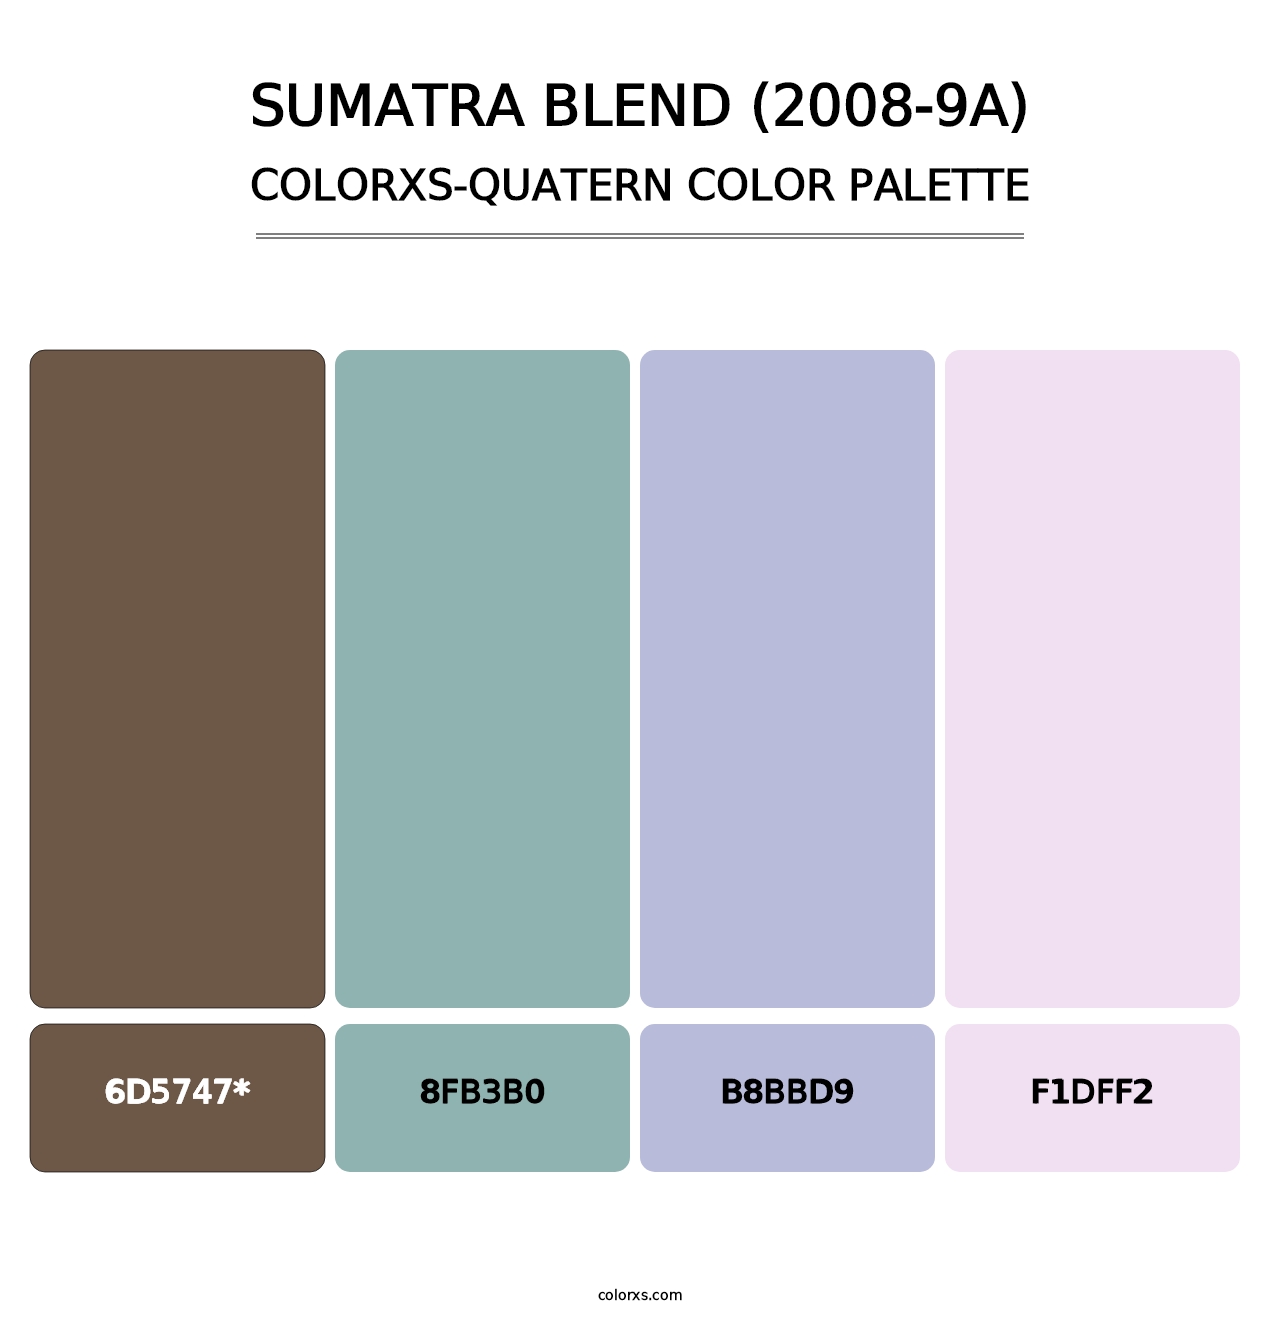 Sumatra Blend (2008-9A) - Colorxs Quatern Palette